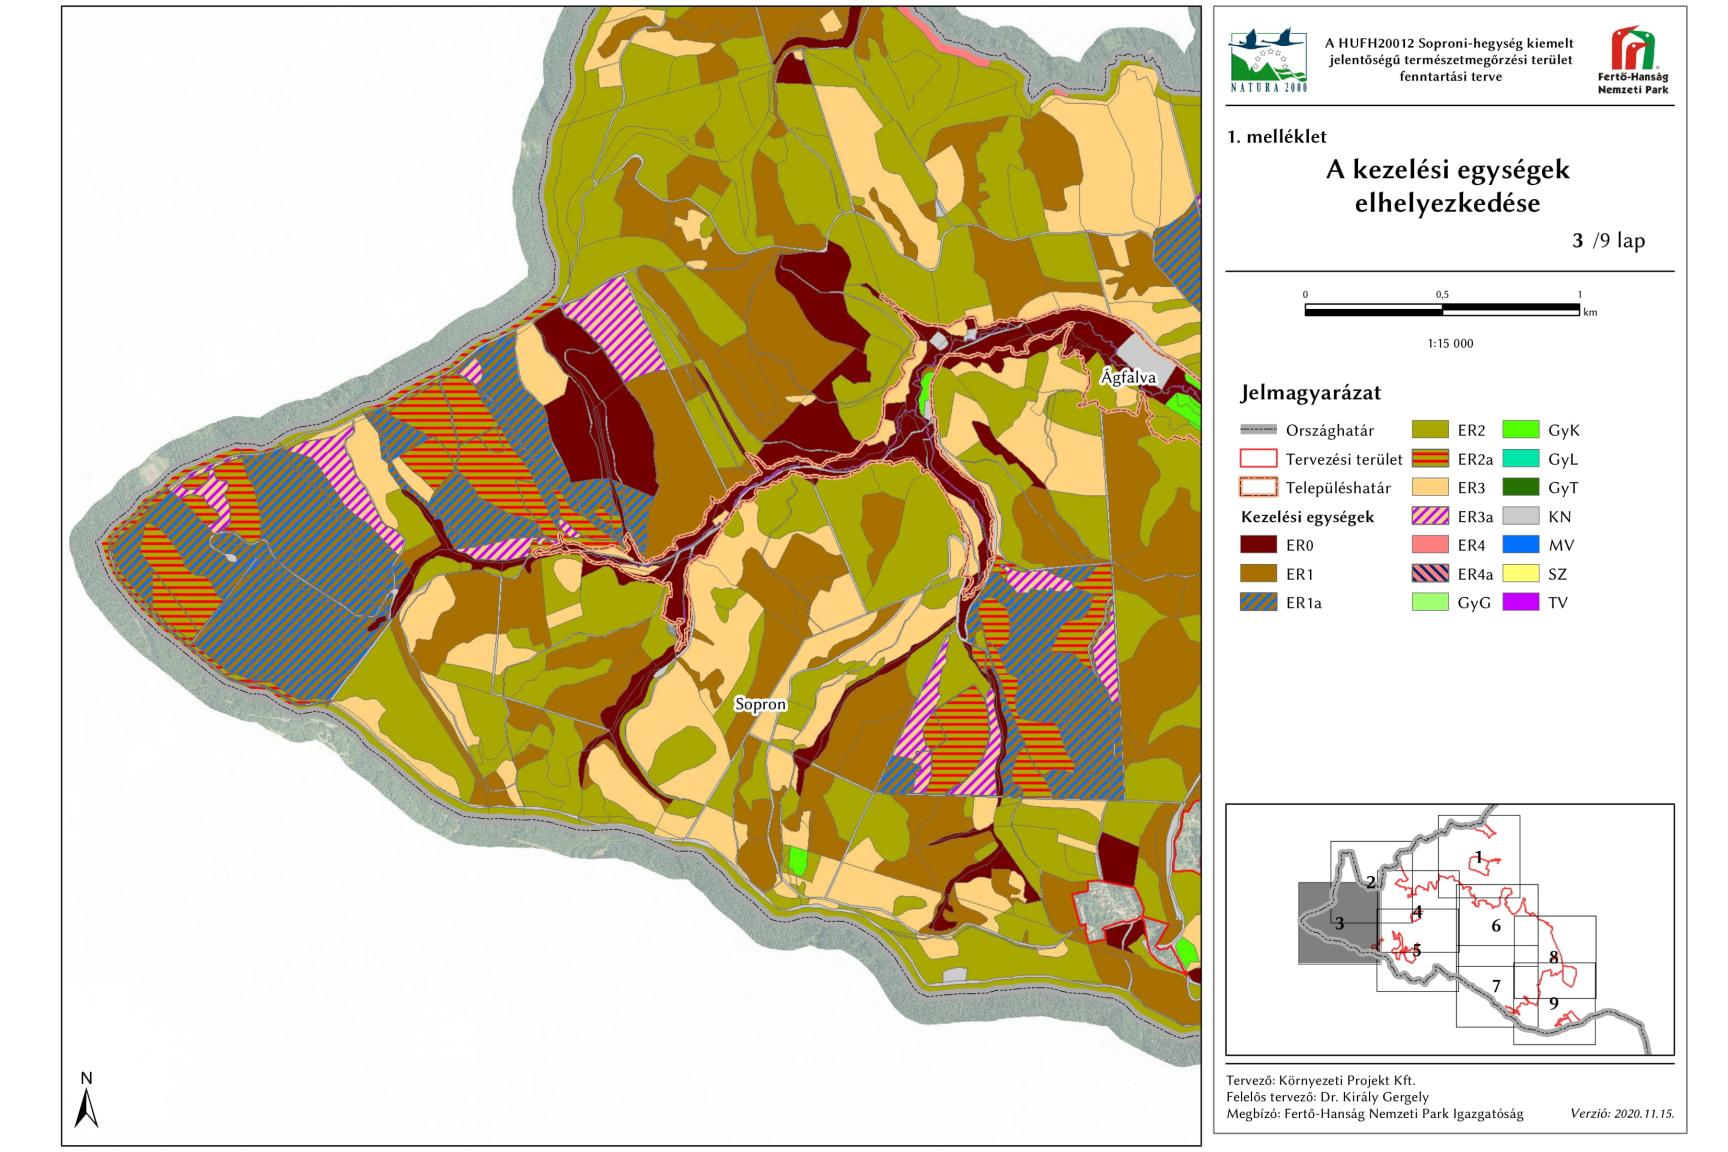 3. ábra: A Soproni-hegység kiemelt jelentőségű természetmegőrzési terület 3. szelvényének kezelési egységei